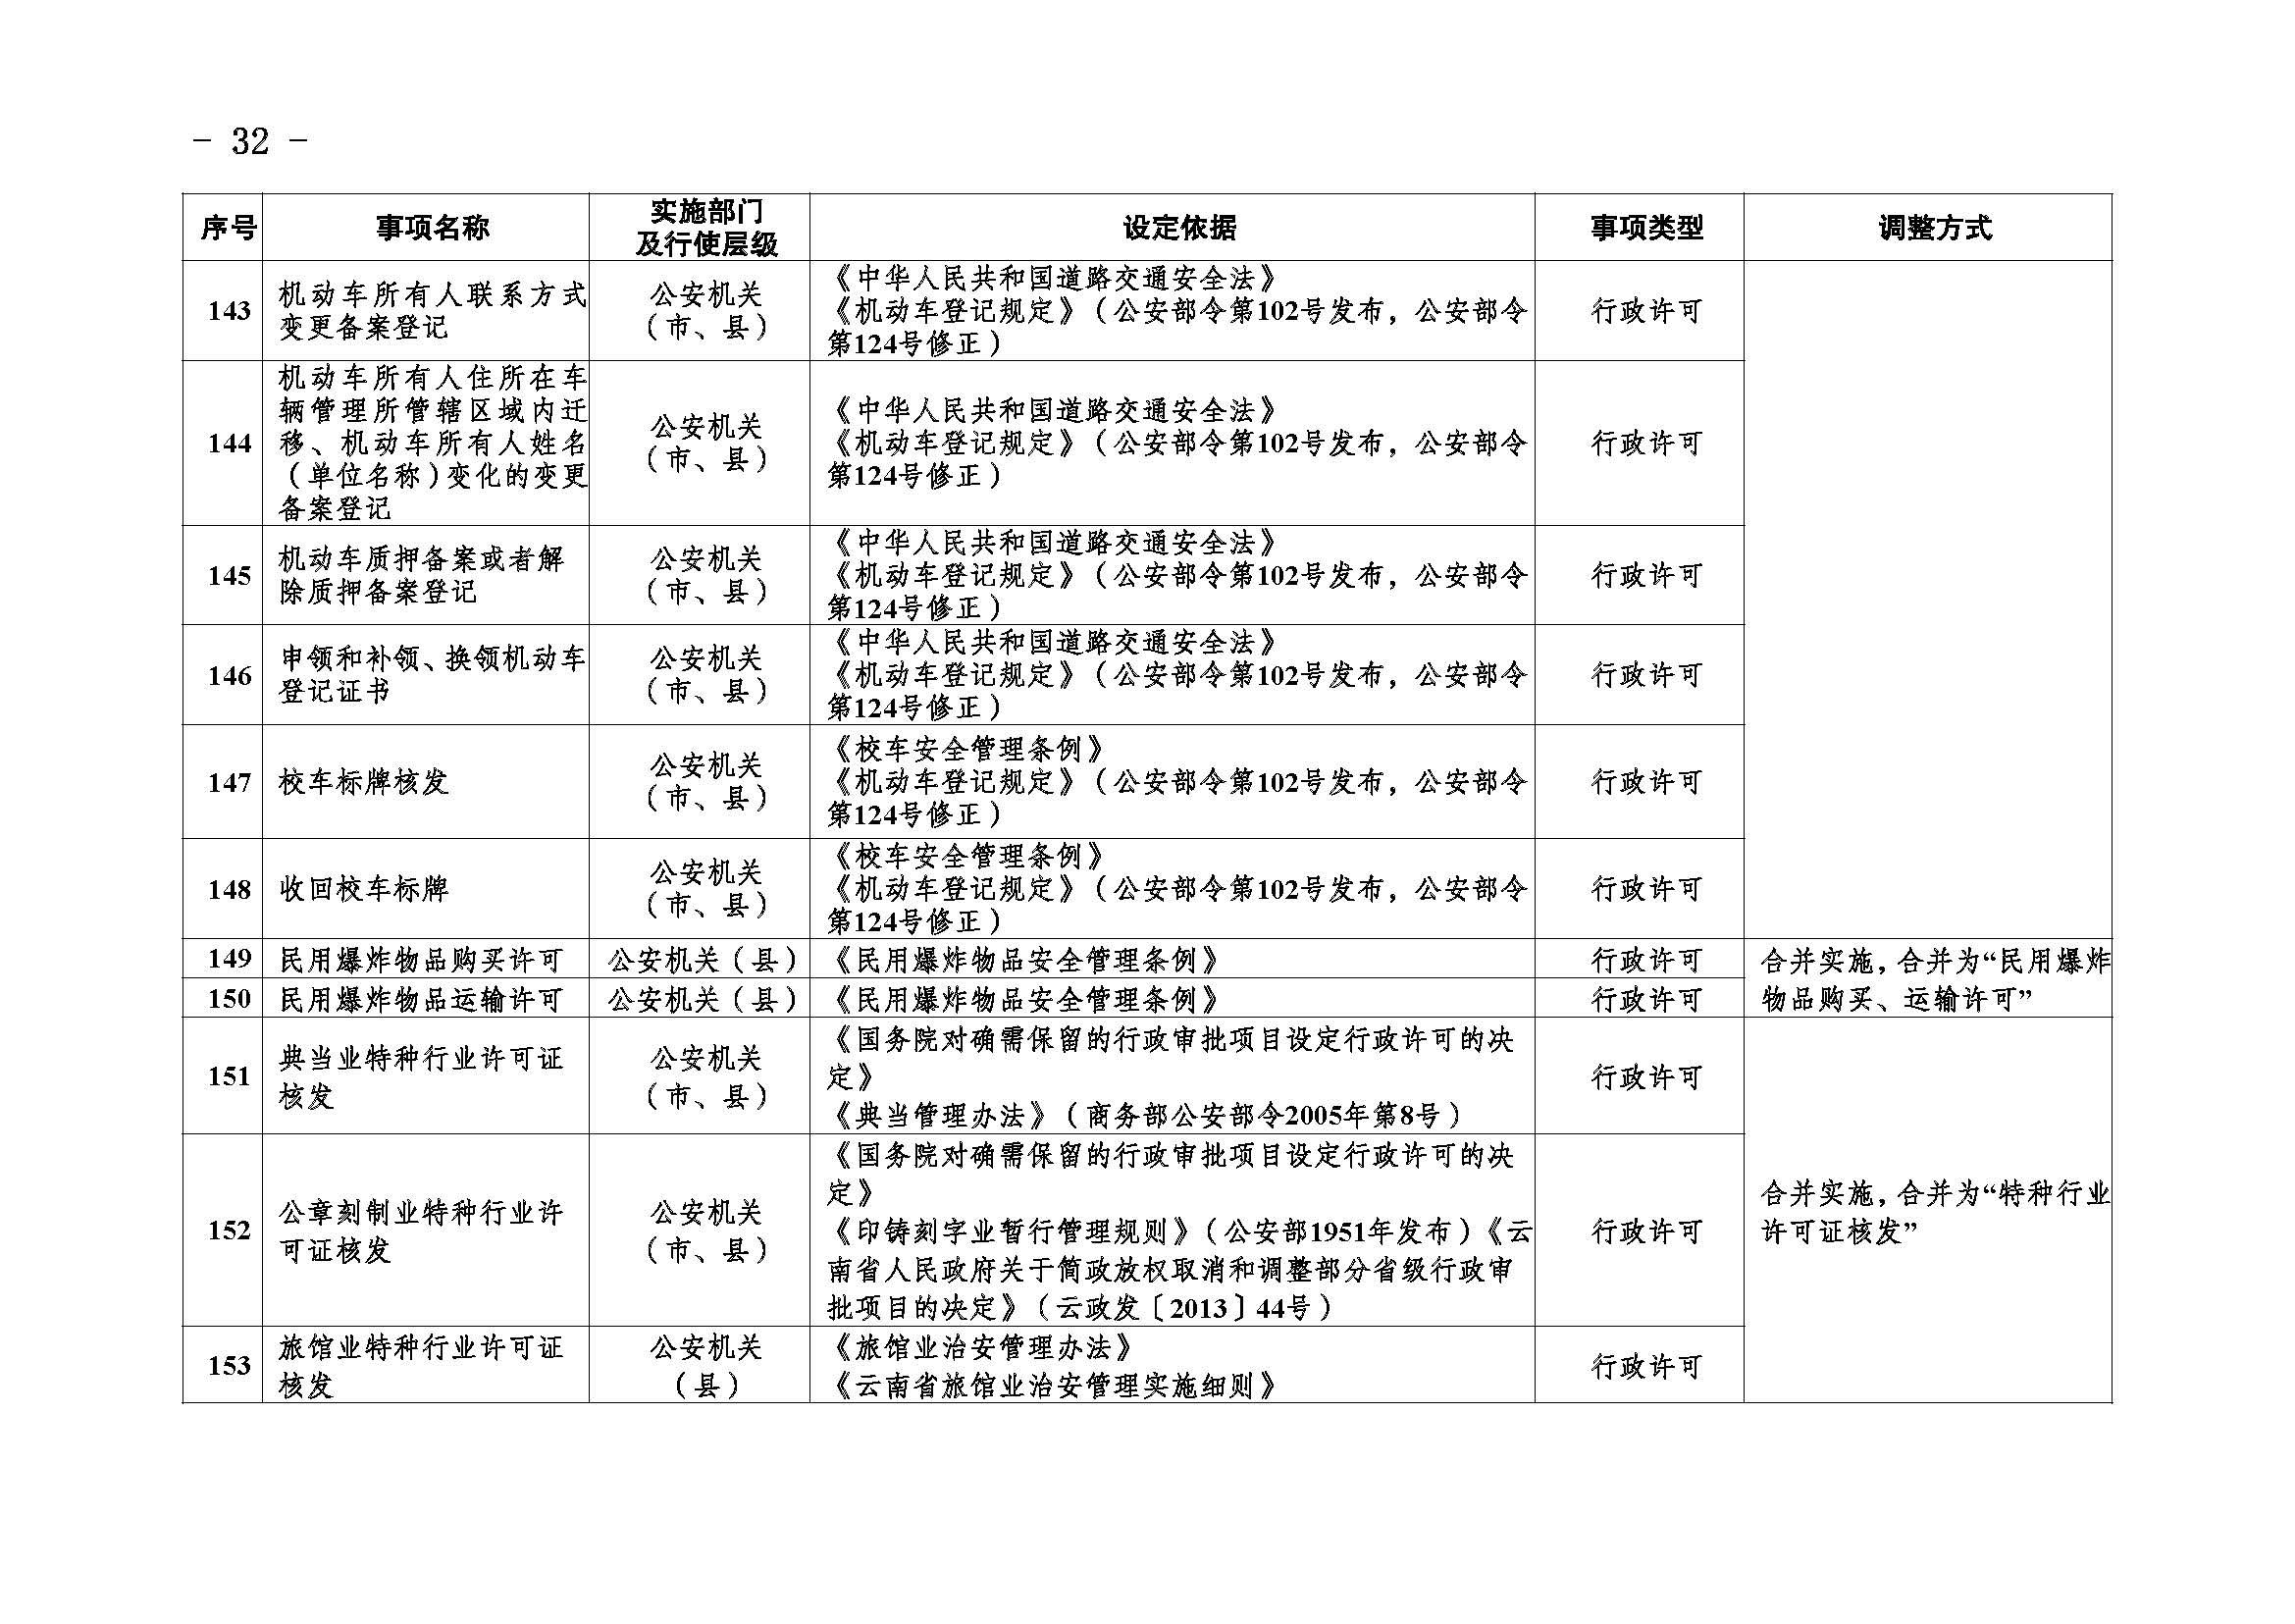 临沧市人民政府办公室关于做好调整370项行政权力事项工作的通知_页面_32